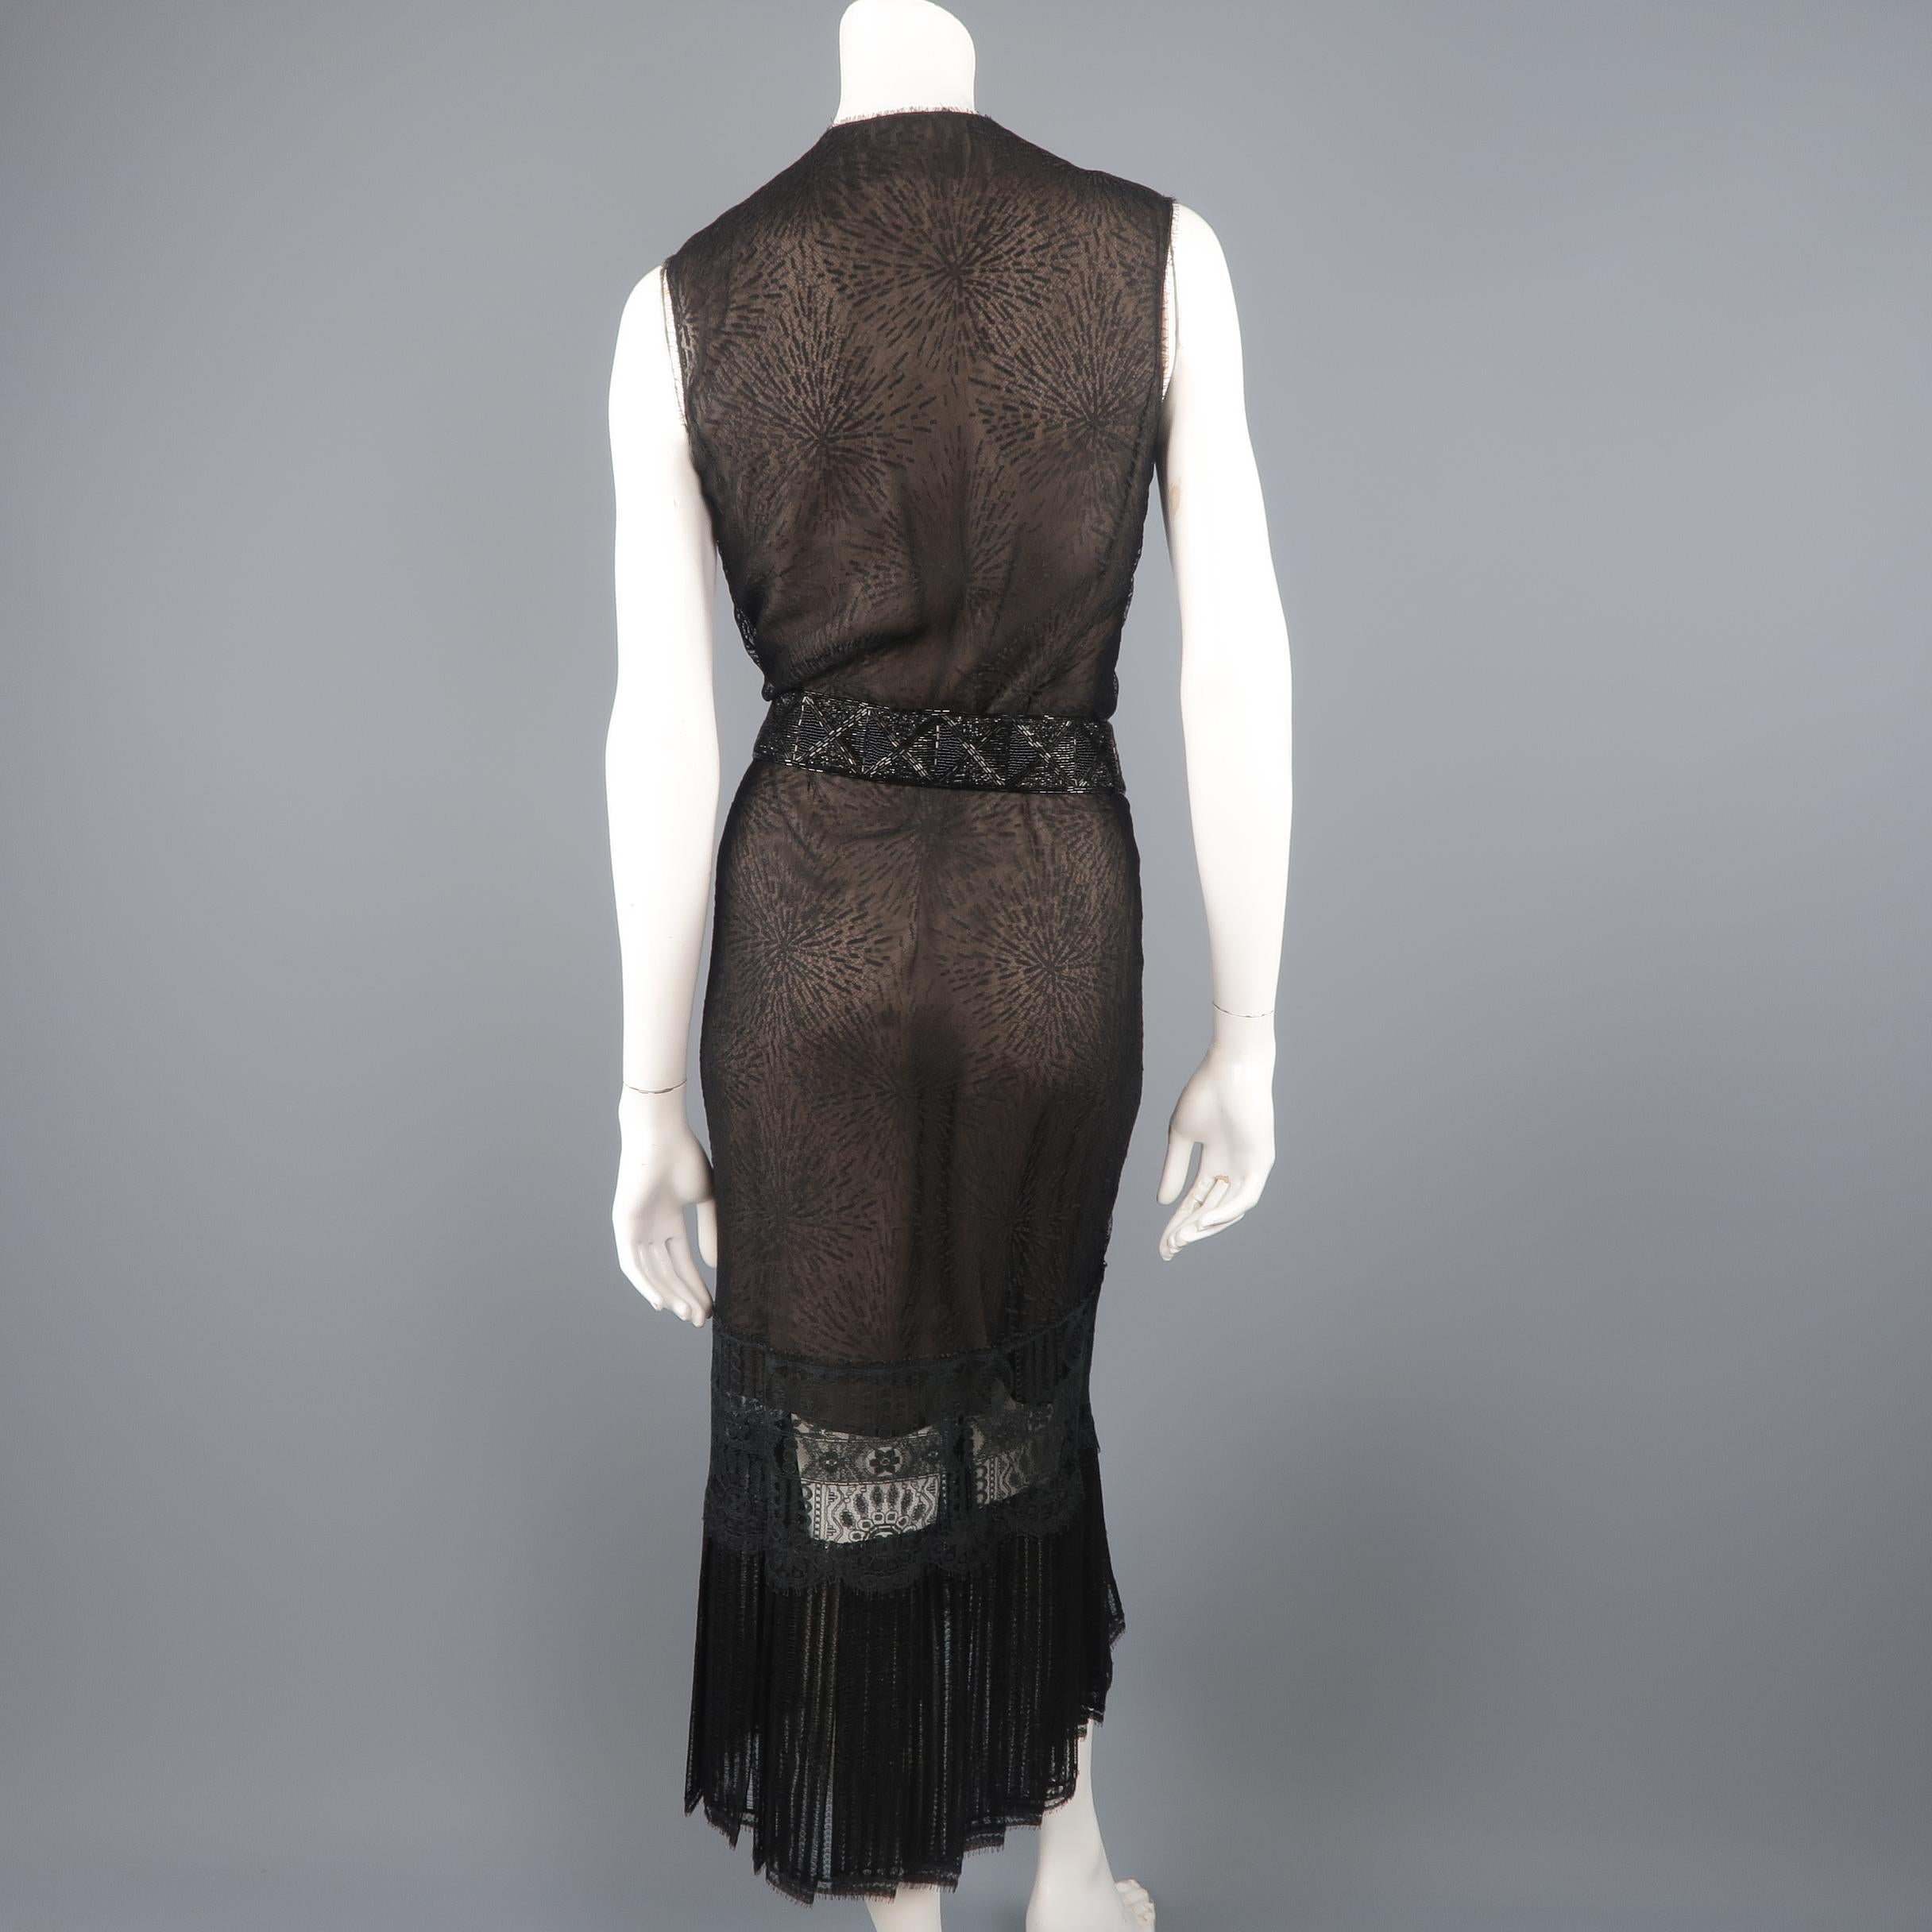 Richard Tyler Dress - Black Lace Ruffled Skirt Sleeveless Beaded Belt 4